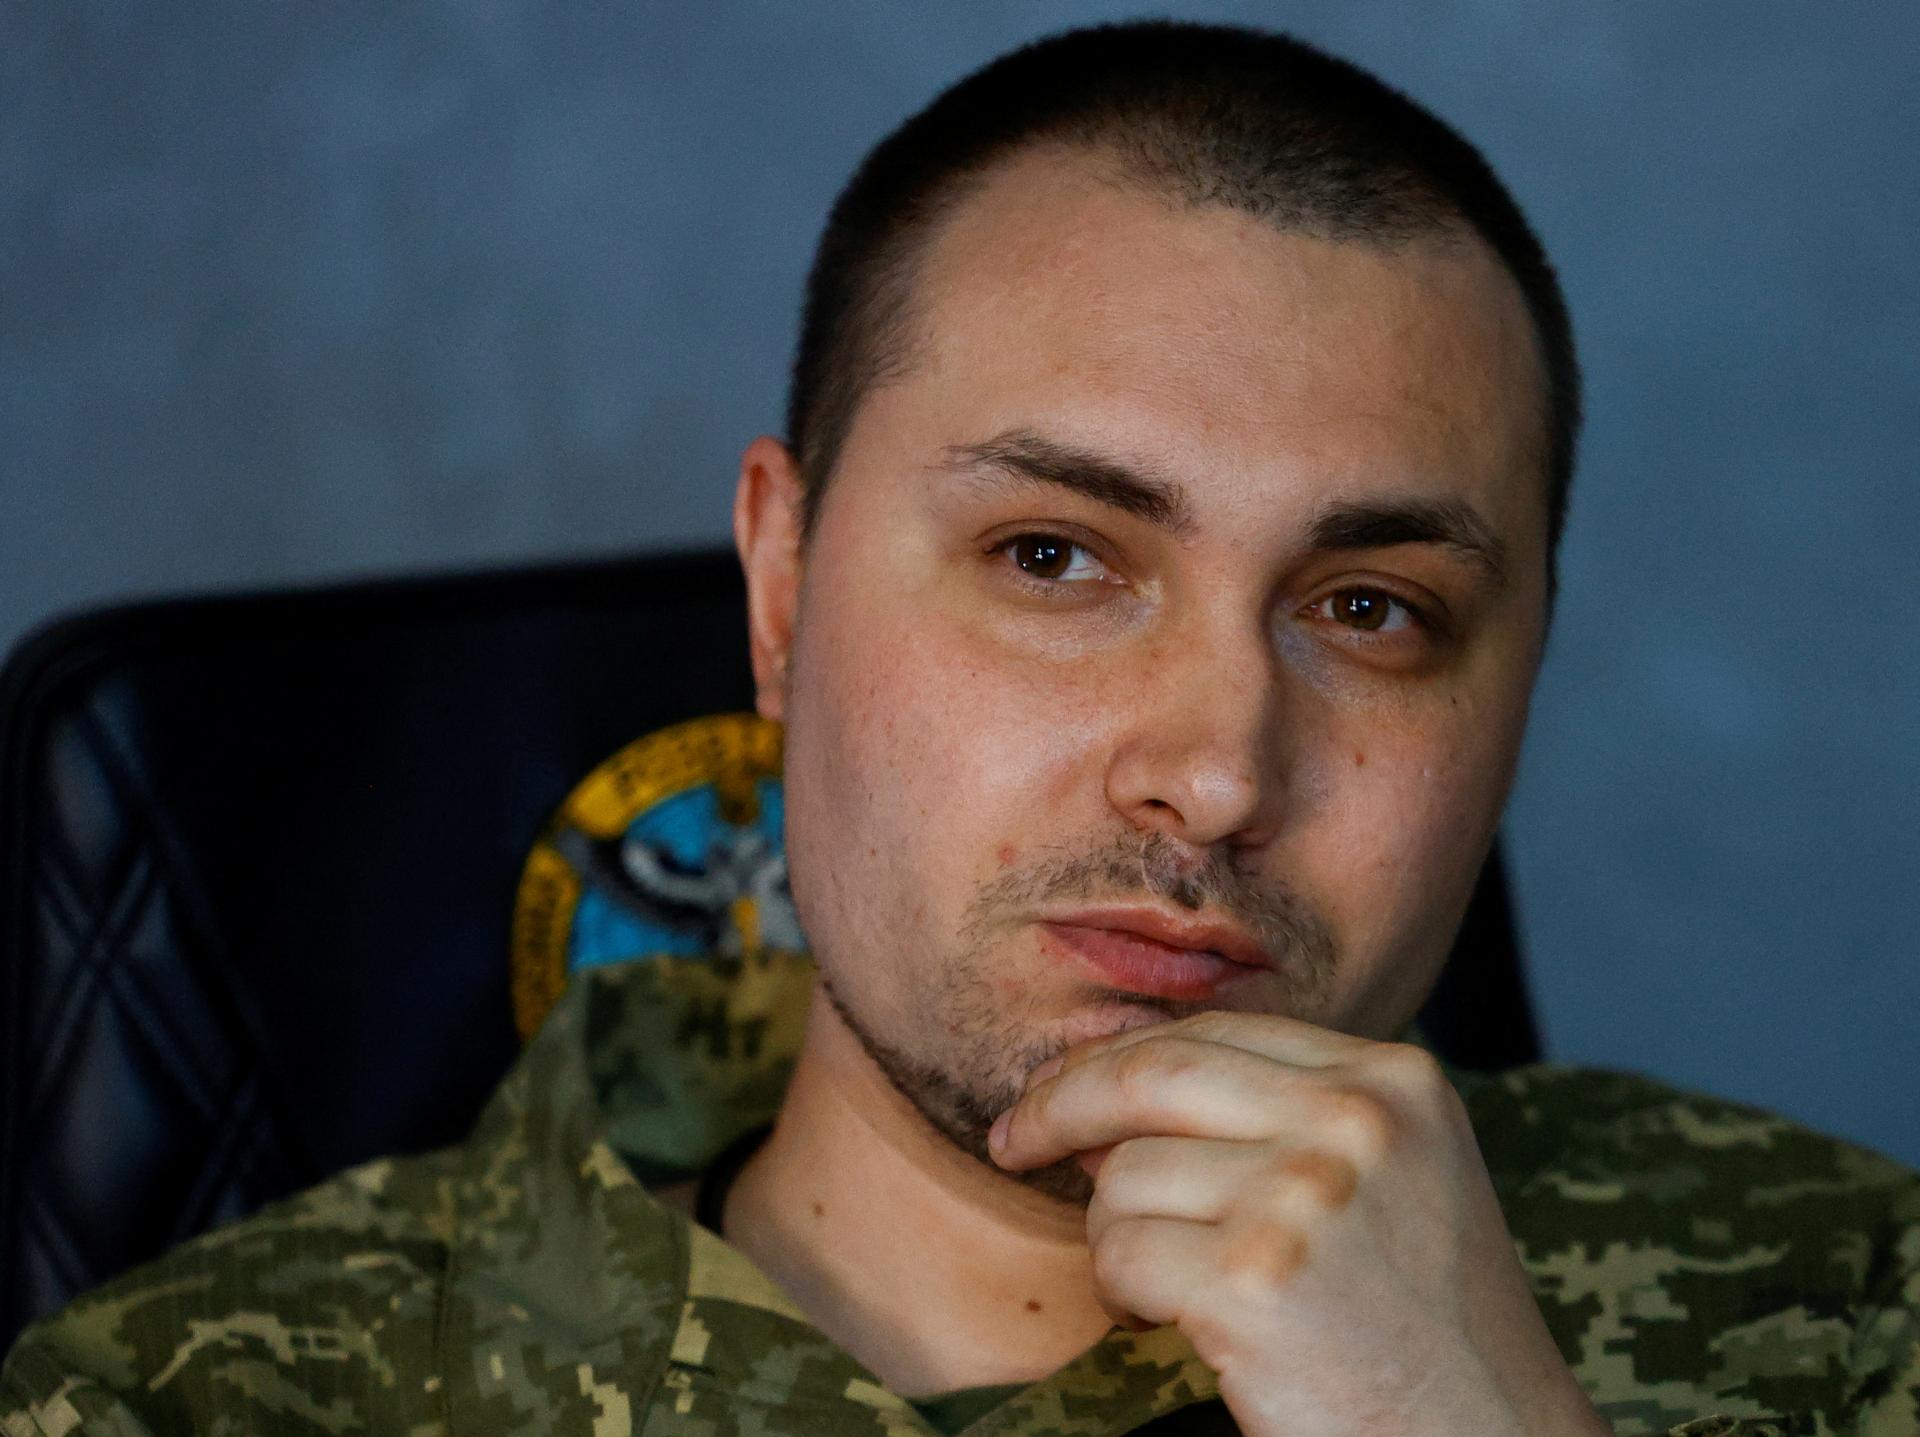 Ukrajinské údery smerujú iba na ruské vojenské ciele, tým sa líšime od nepriateľa, tvrdí šéf tajných služieb